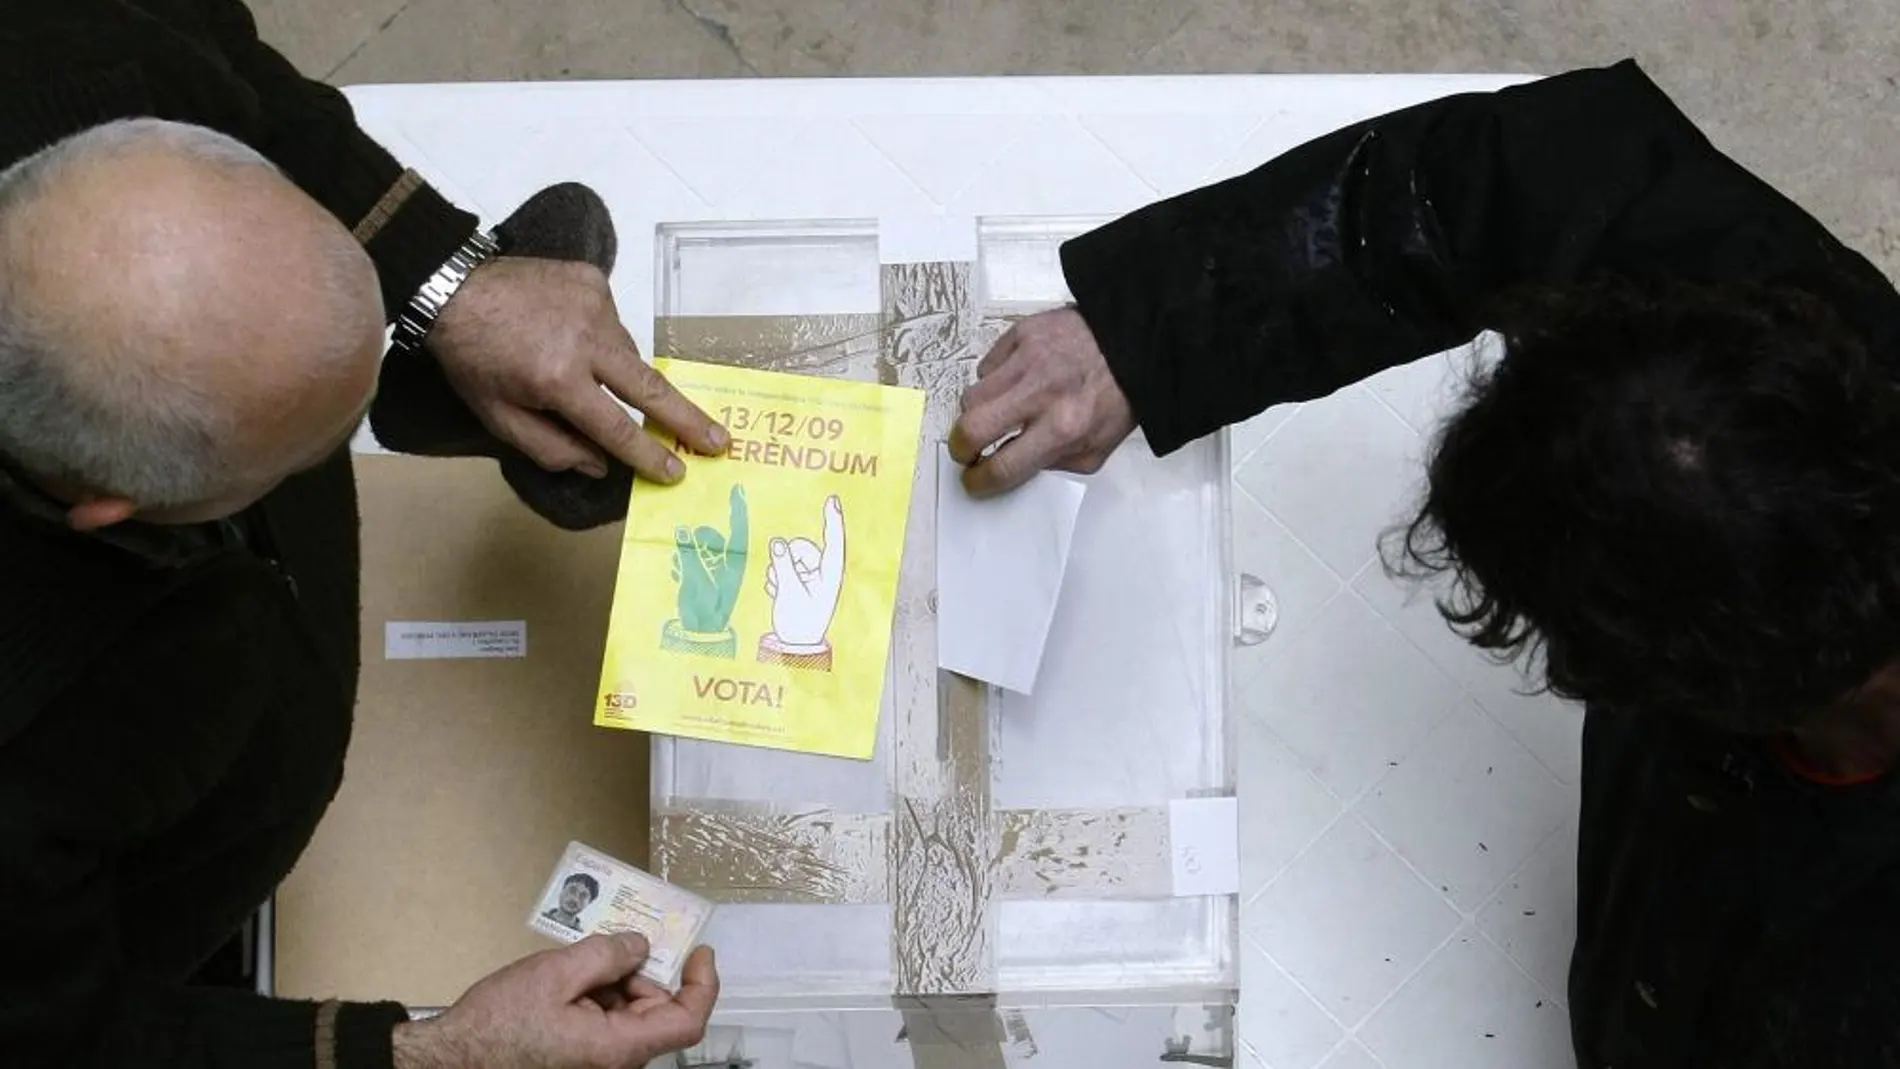 Imagen del referéndum ilegal que se celebró en 2009 en Arenys de Mar